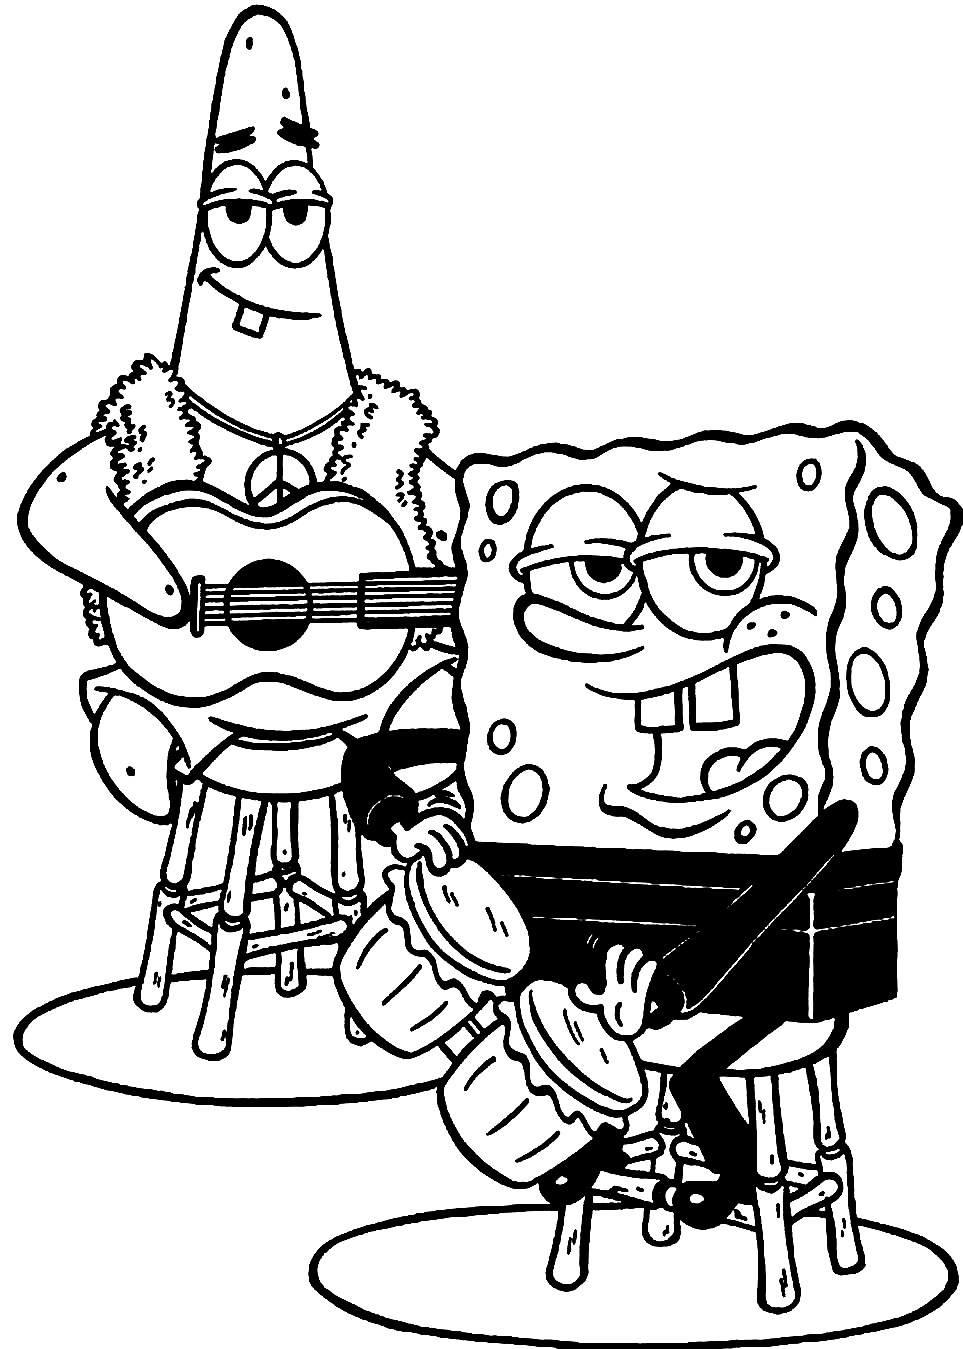 Patrick und Spongebob 1 von Spongebob